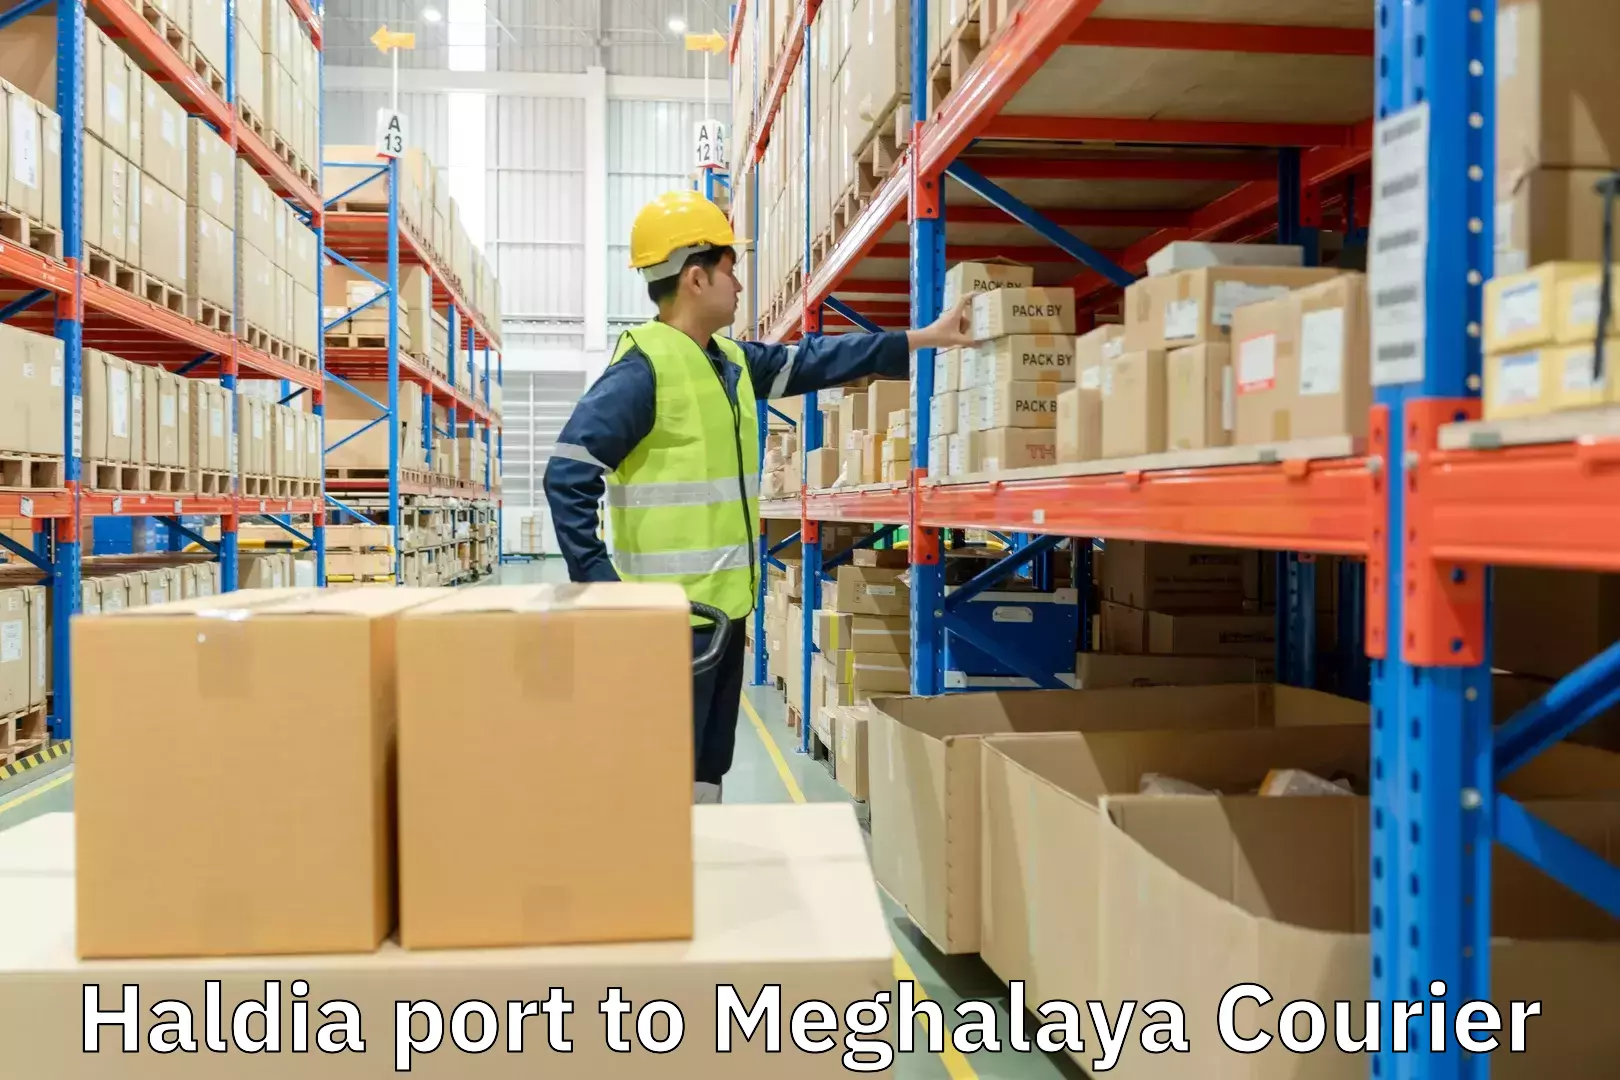 Multi-service courier options Haldia port to Dkhiah West